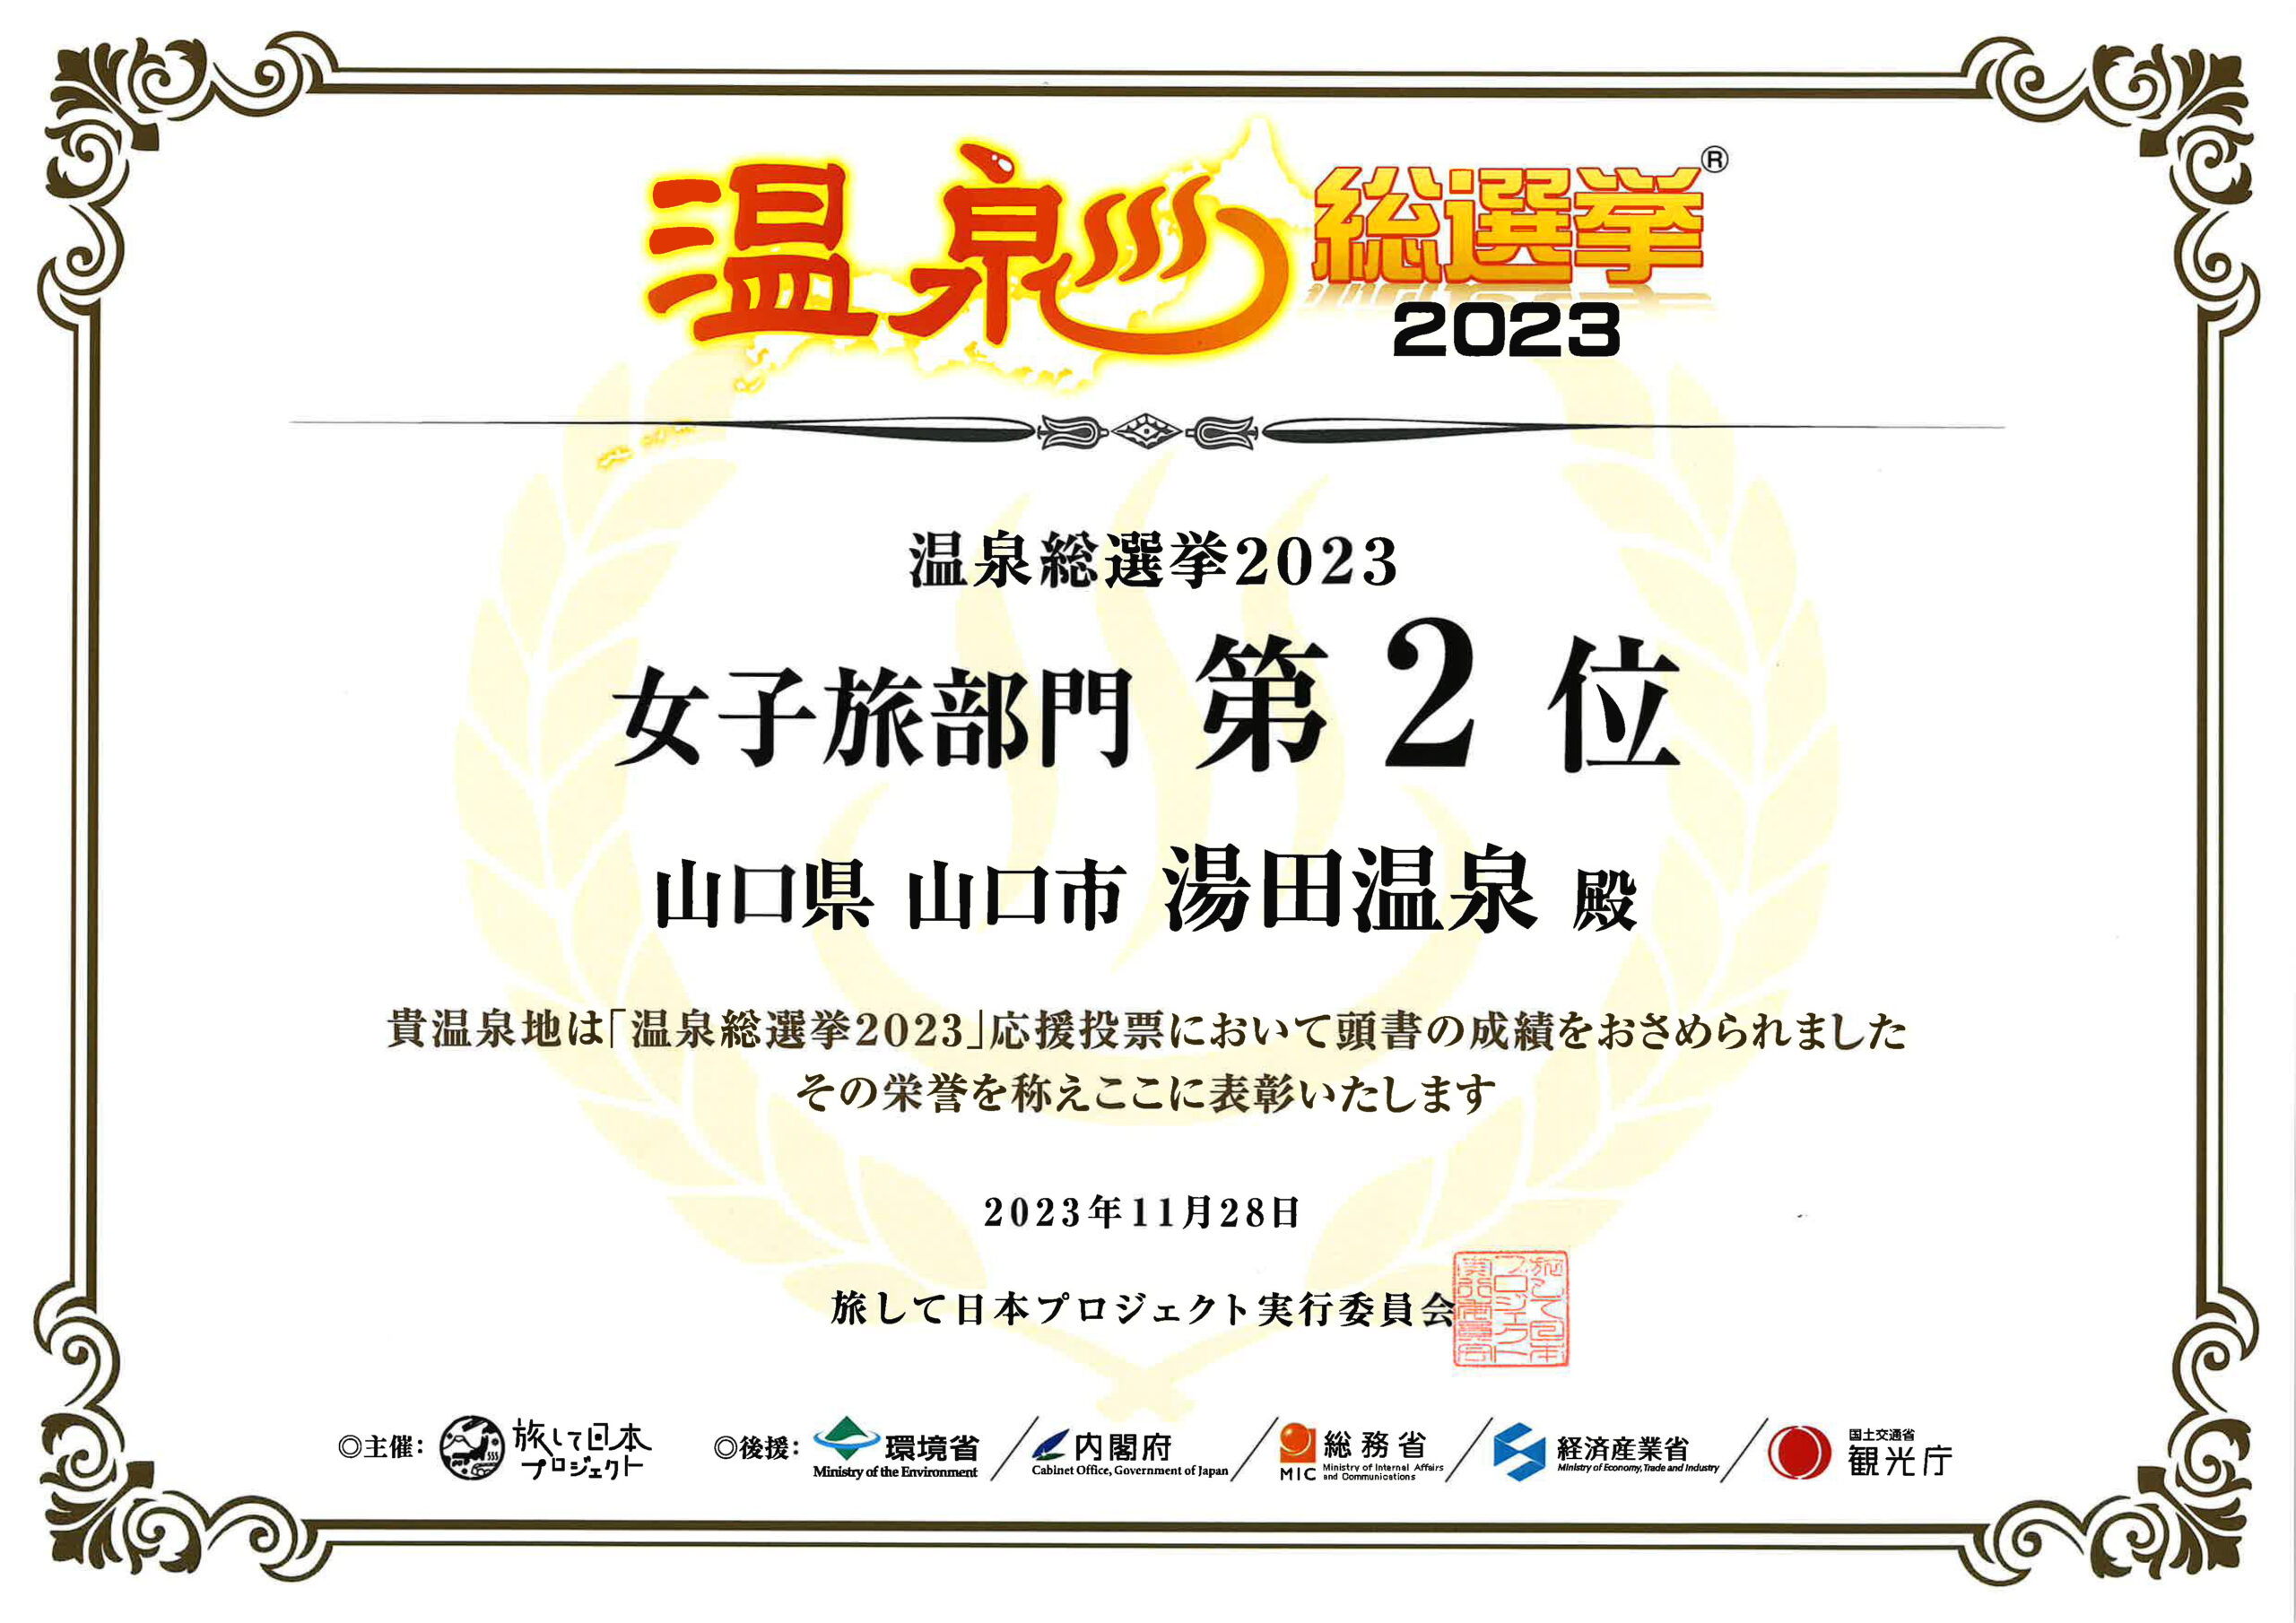 温泉総選挙で「女子旅部門」2位を受賞しました！！